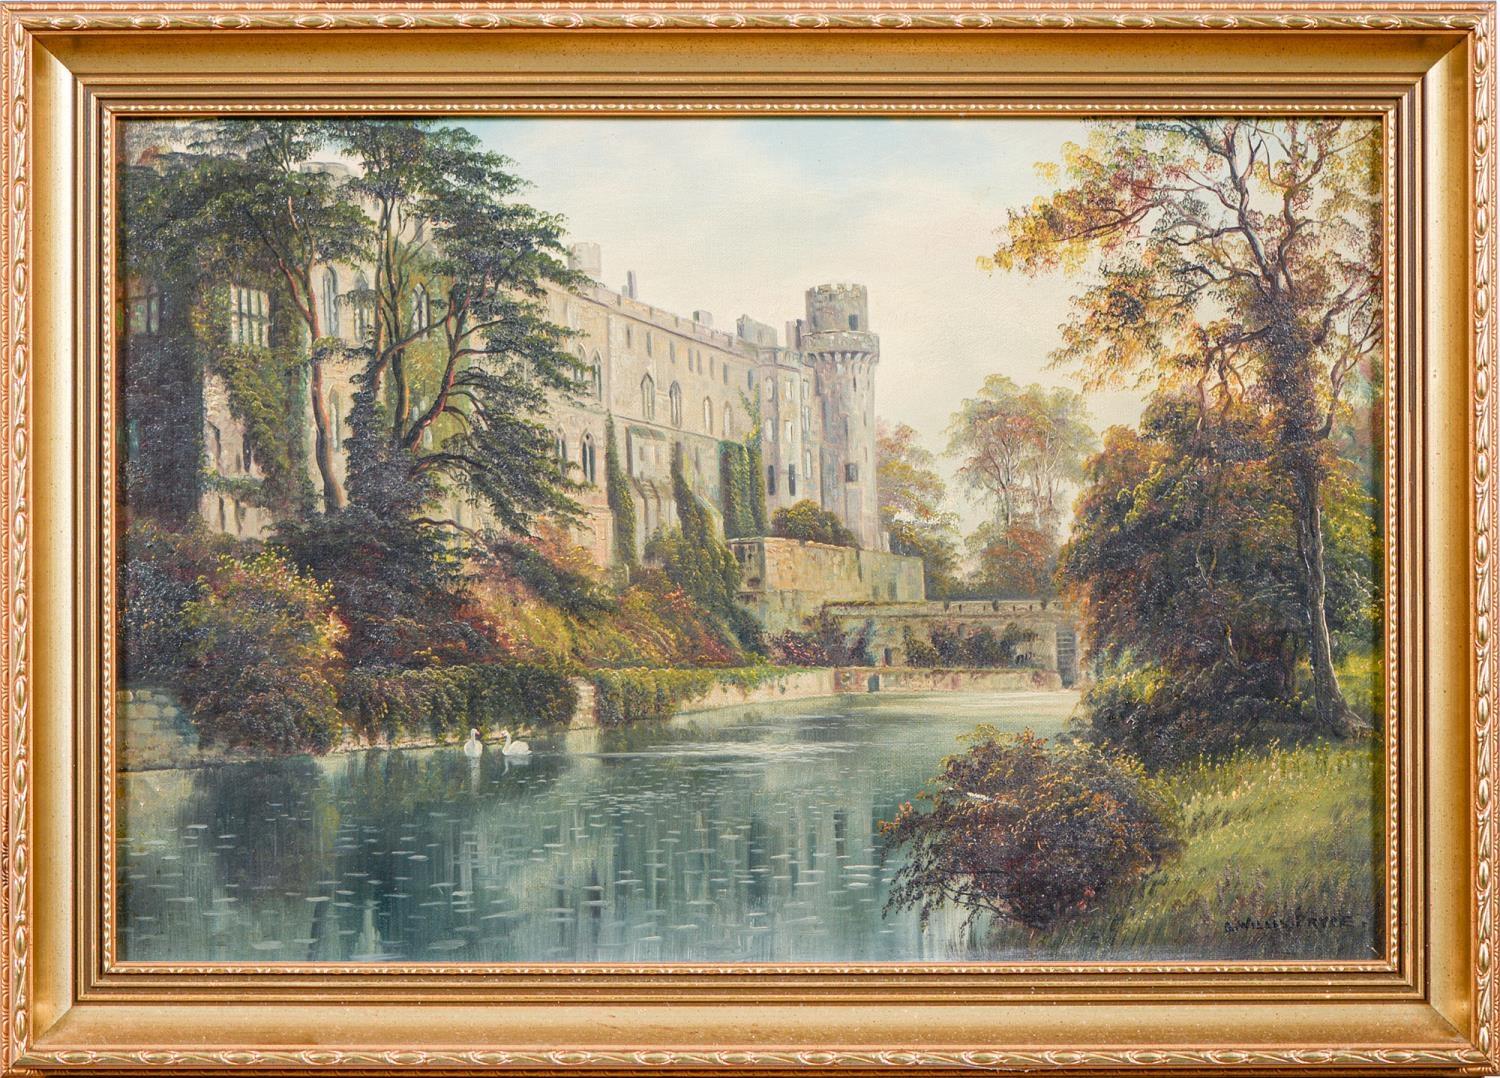 Landscape Painting George Willis  Pryce - Château de Willy et rivière Avon, huile de George Willis Pryce